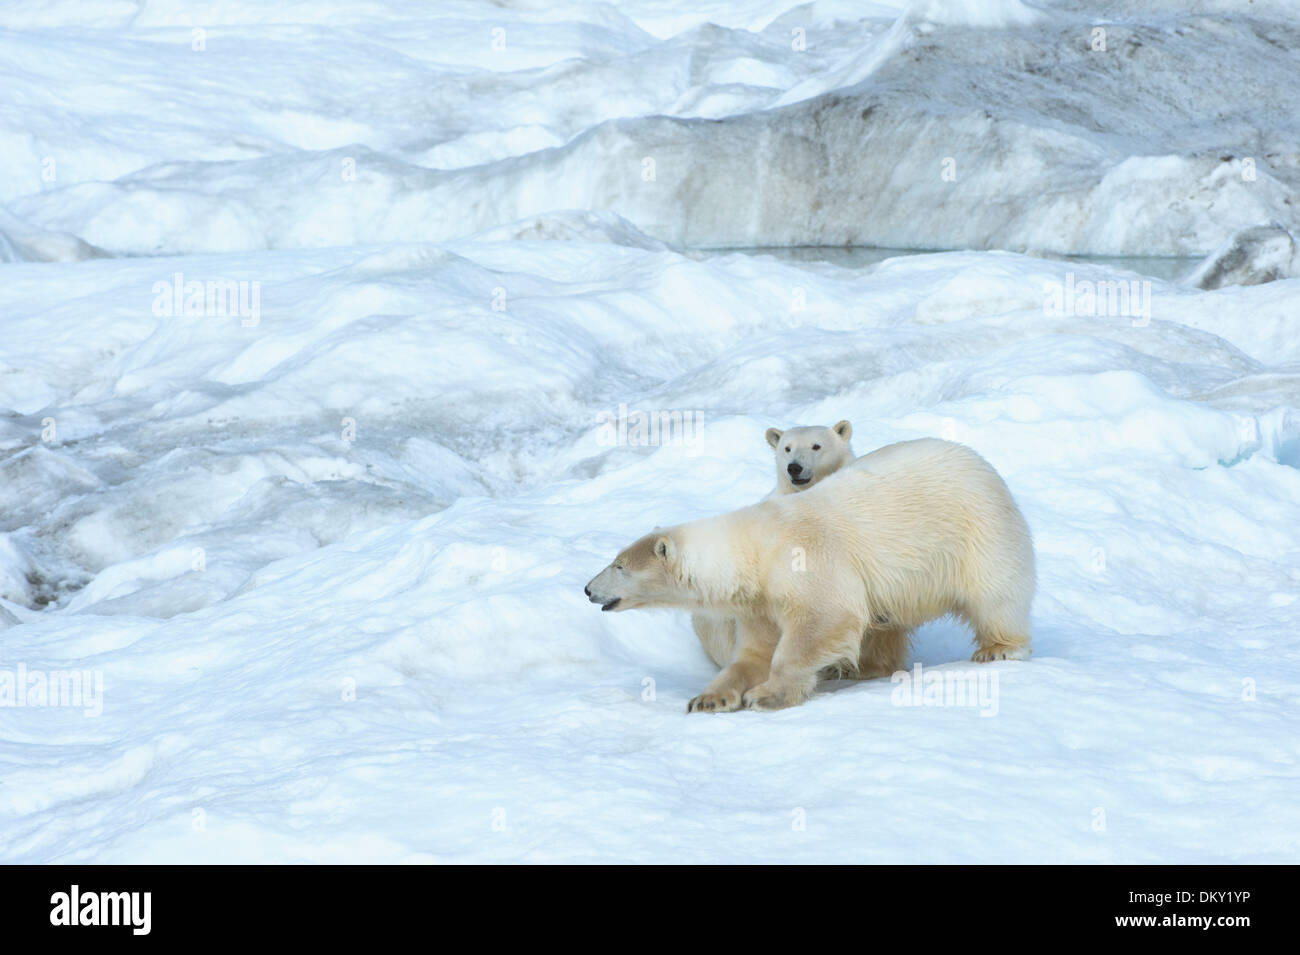 Mère ours polaire avec un deux ans cub (Ursus maritimus), l'île Wrangel, Chuckchi Mer, Extrême-Orient russe Banque D'Images